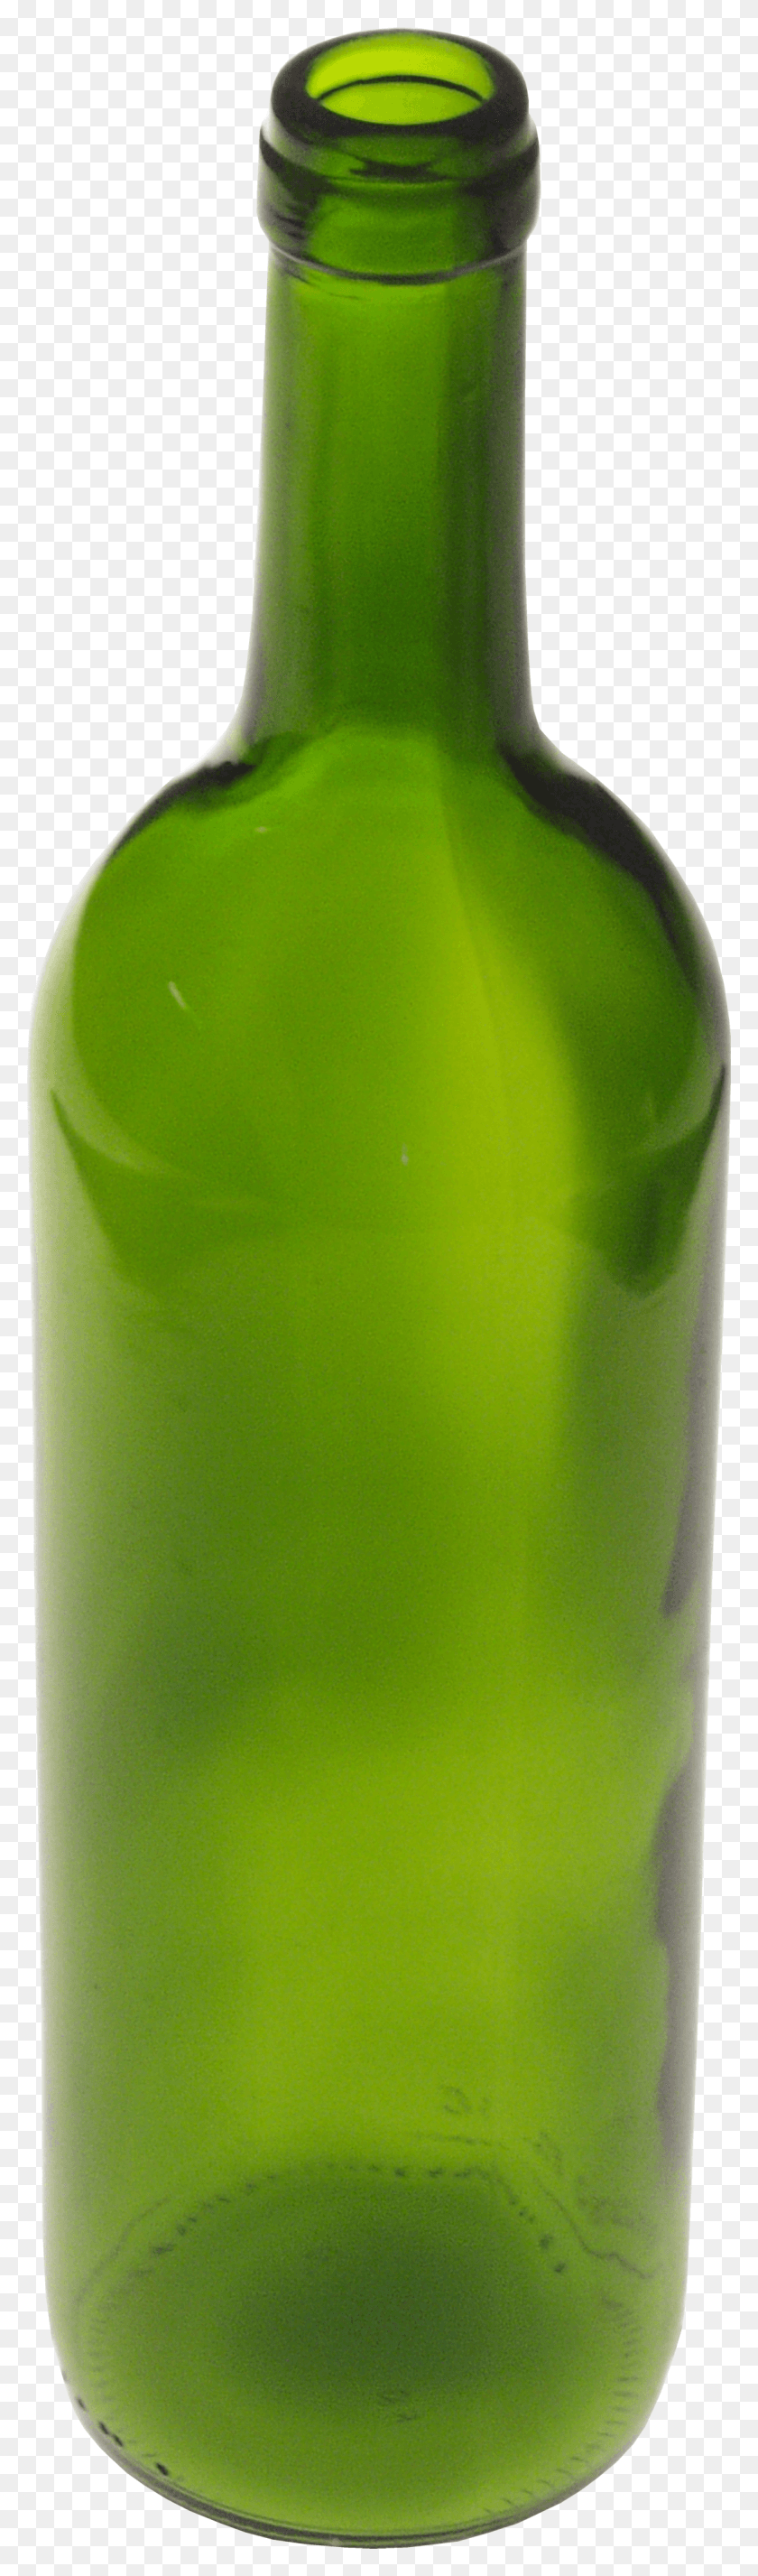 1167x4179 Greem Glass Bottle Bottle, Beverage, Drink, Alcohol HD PNG Download